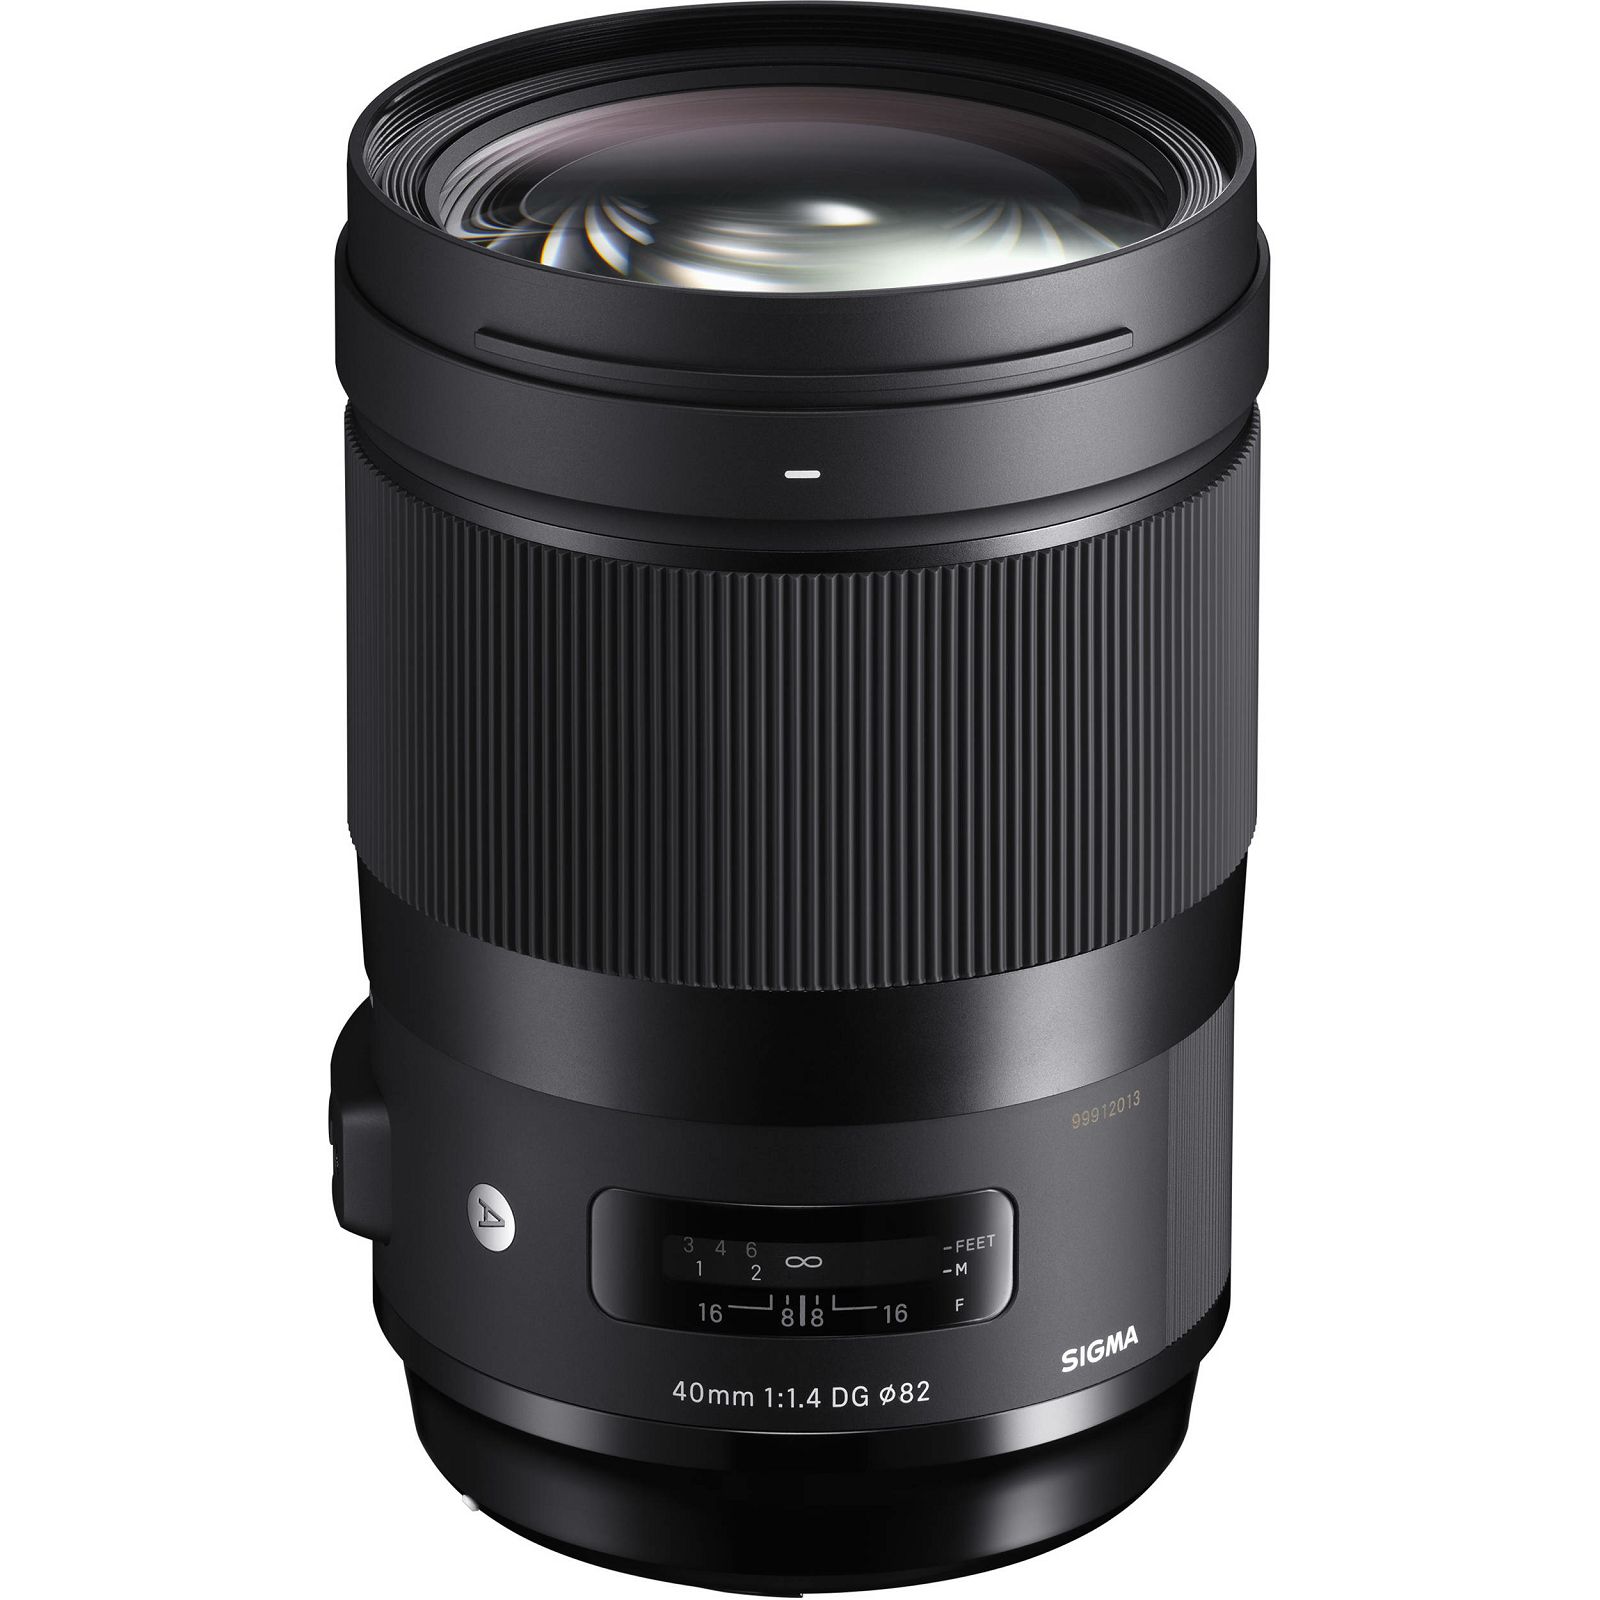 Sigma 40mm f/1.4 DG HSM ART objektiv za Nikon FX (332955)